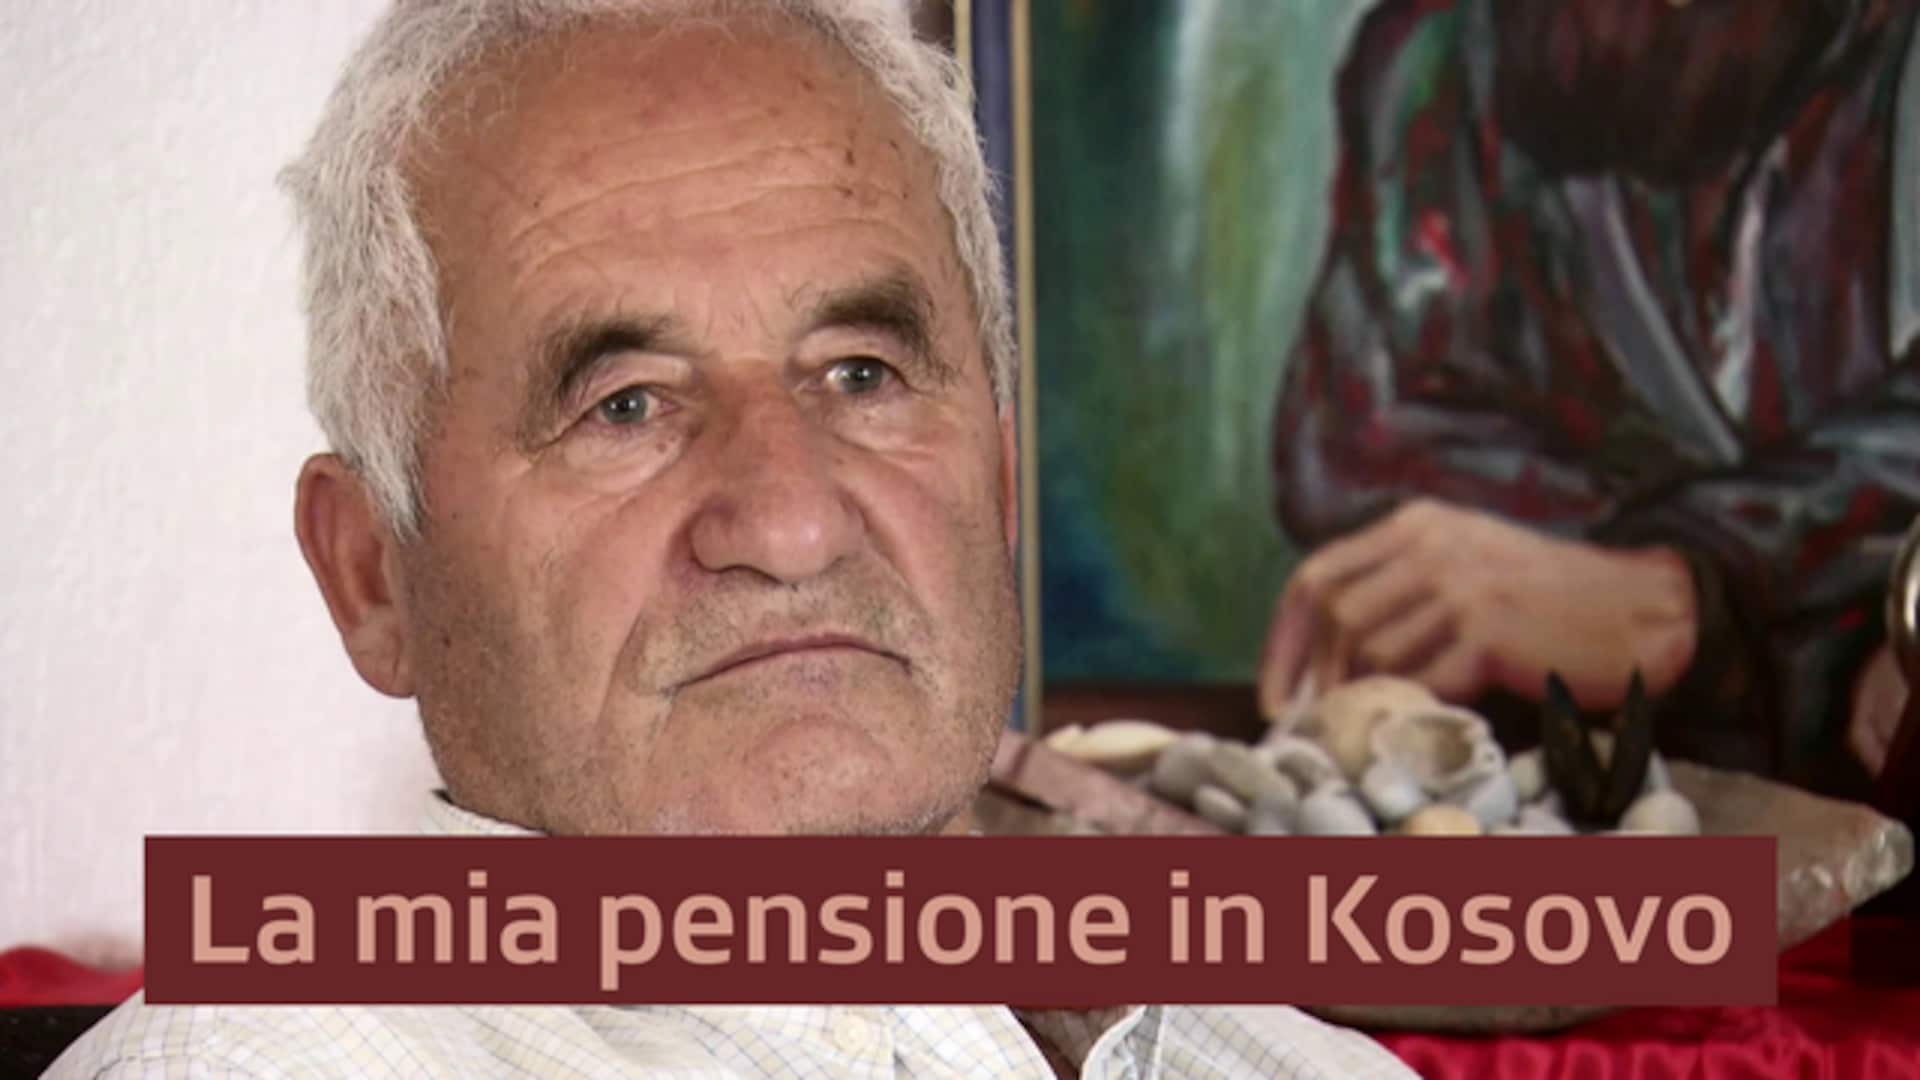 La mia pensione in Kosovo